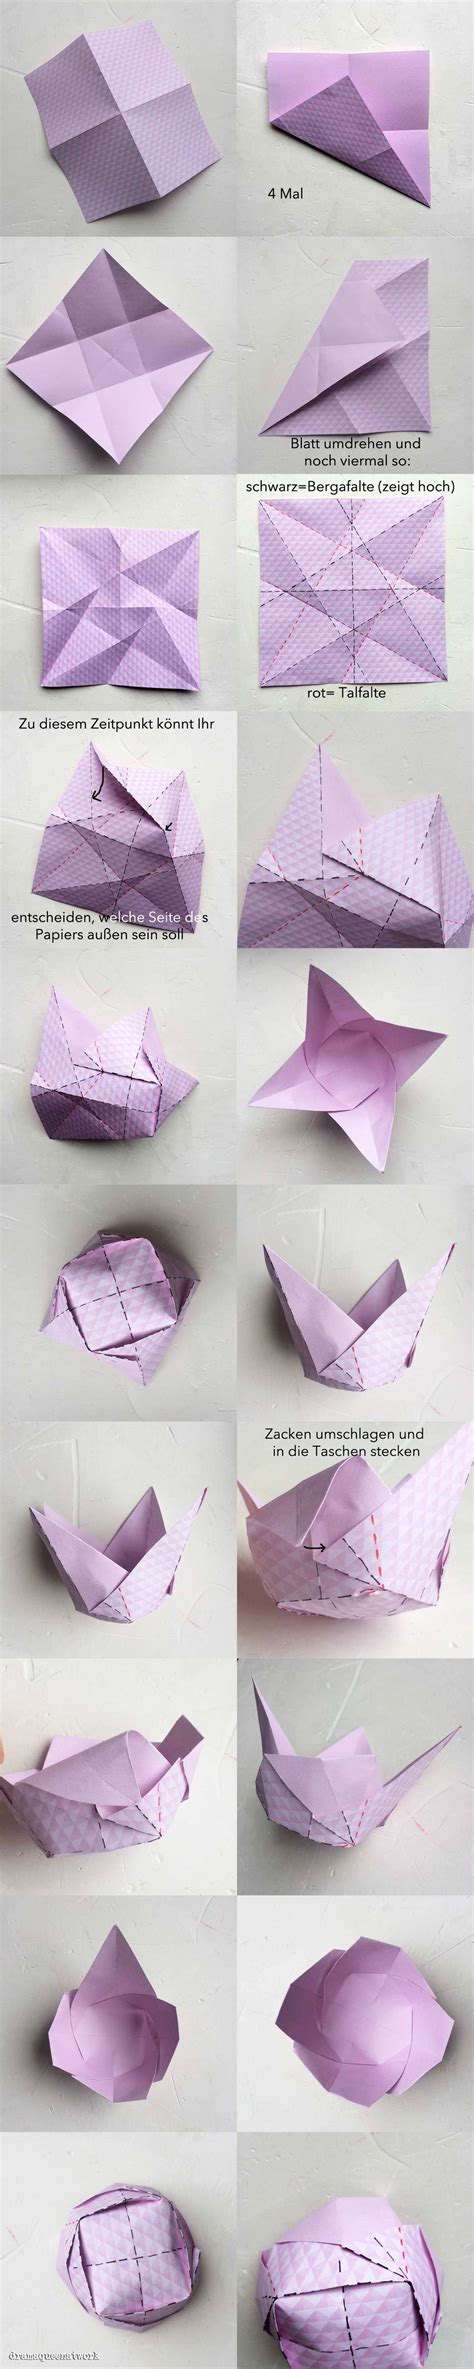 Diese schachtel ist die anspruchsvollste der drei varianten. Papierschälchen Galore | Origami boxen, Origami, Basteln ...